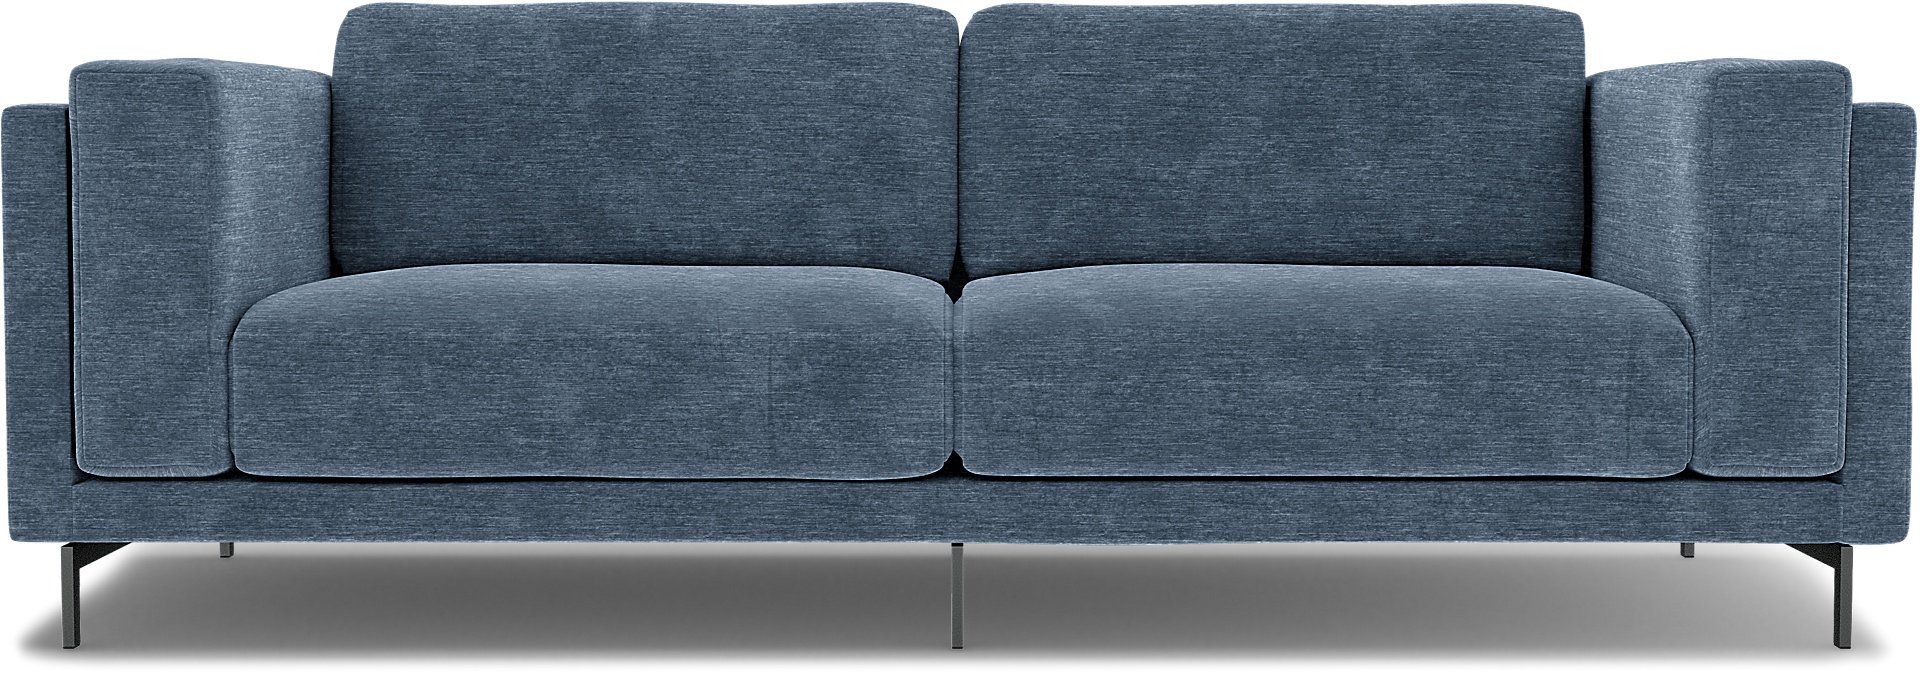 IKEA - Nockeby 3 Seater Sofa Cover, Mineral Blue, Velvet - Bemz